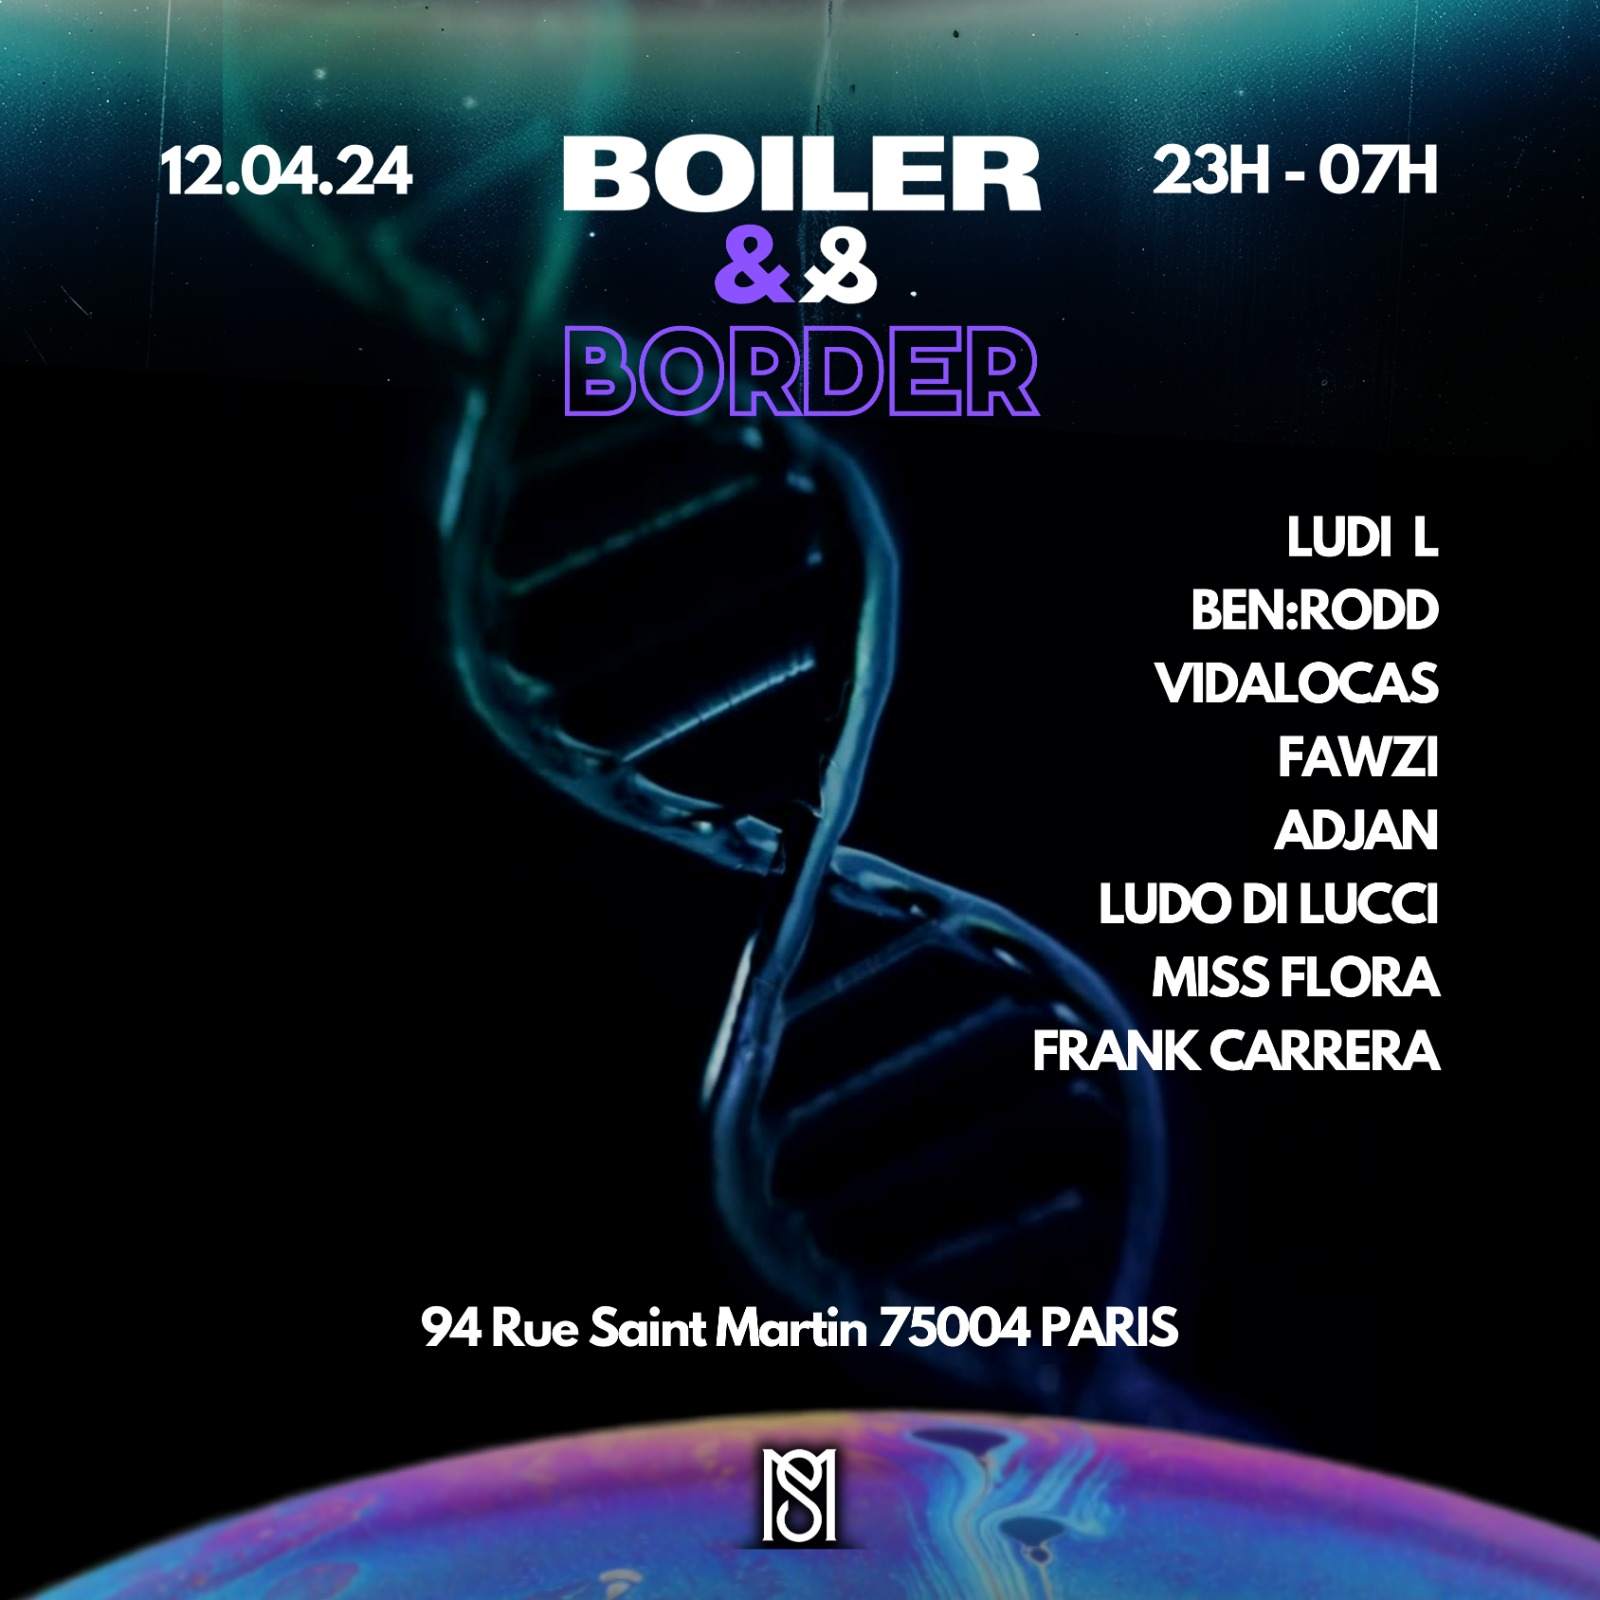 BOILER & BORDER - Página frontal